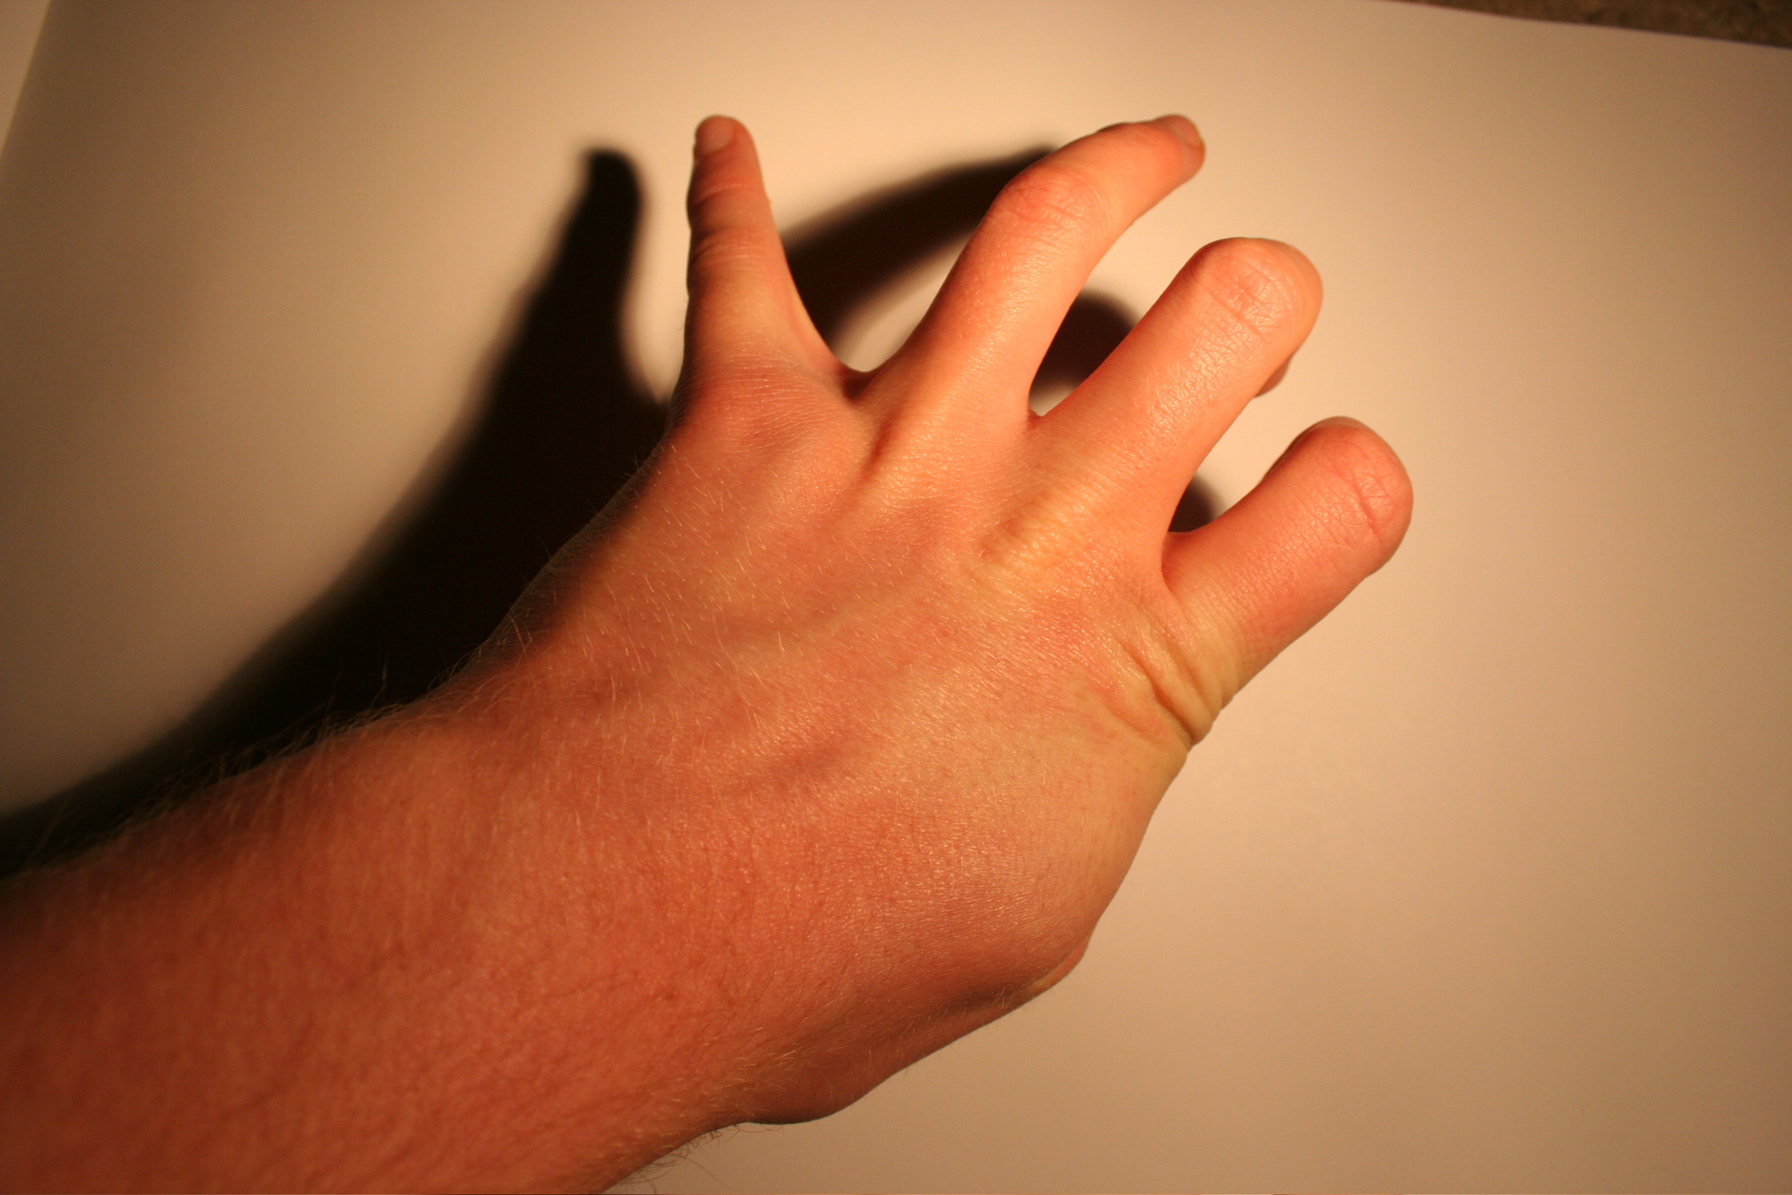 A hand photo